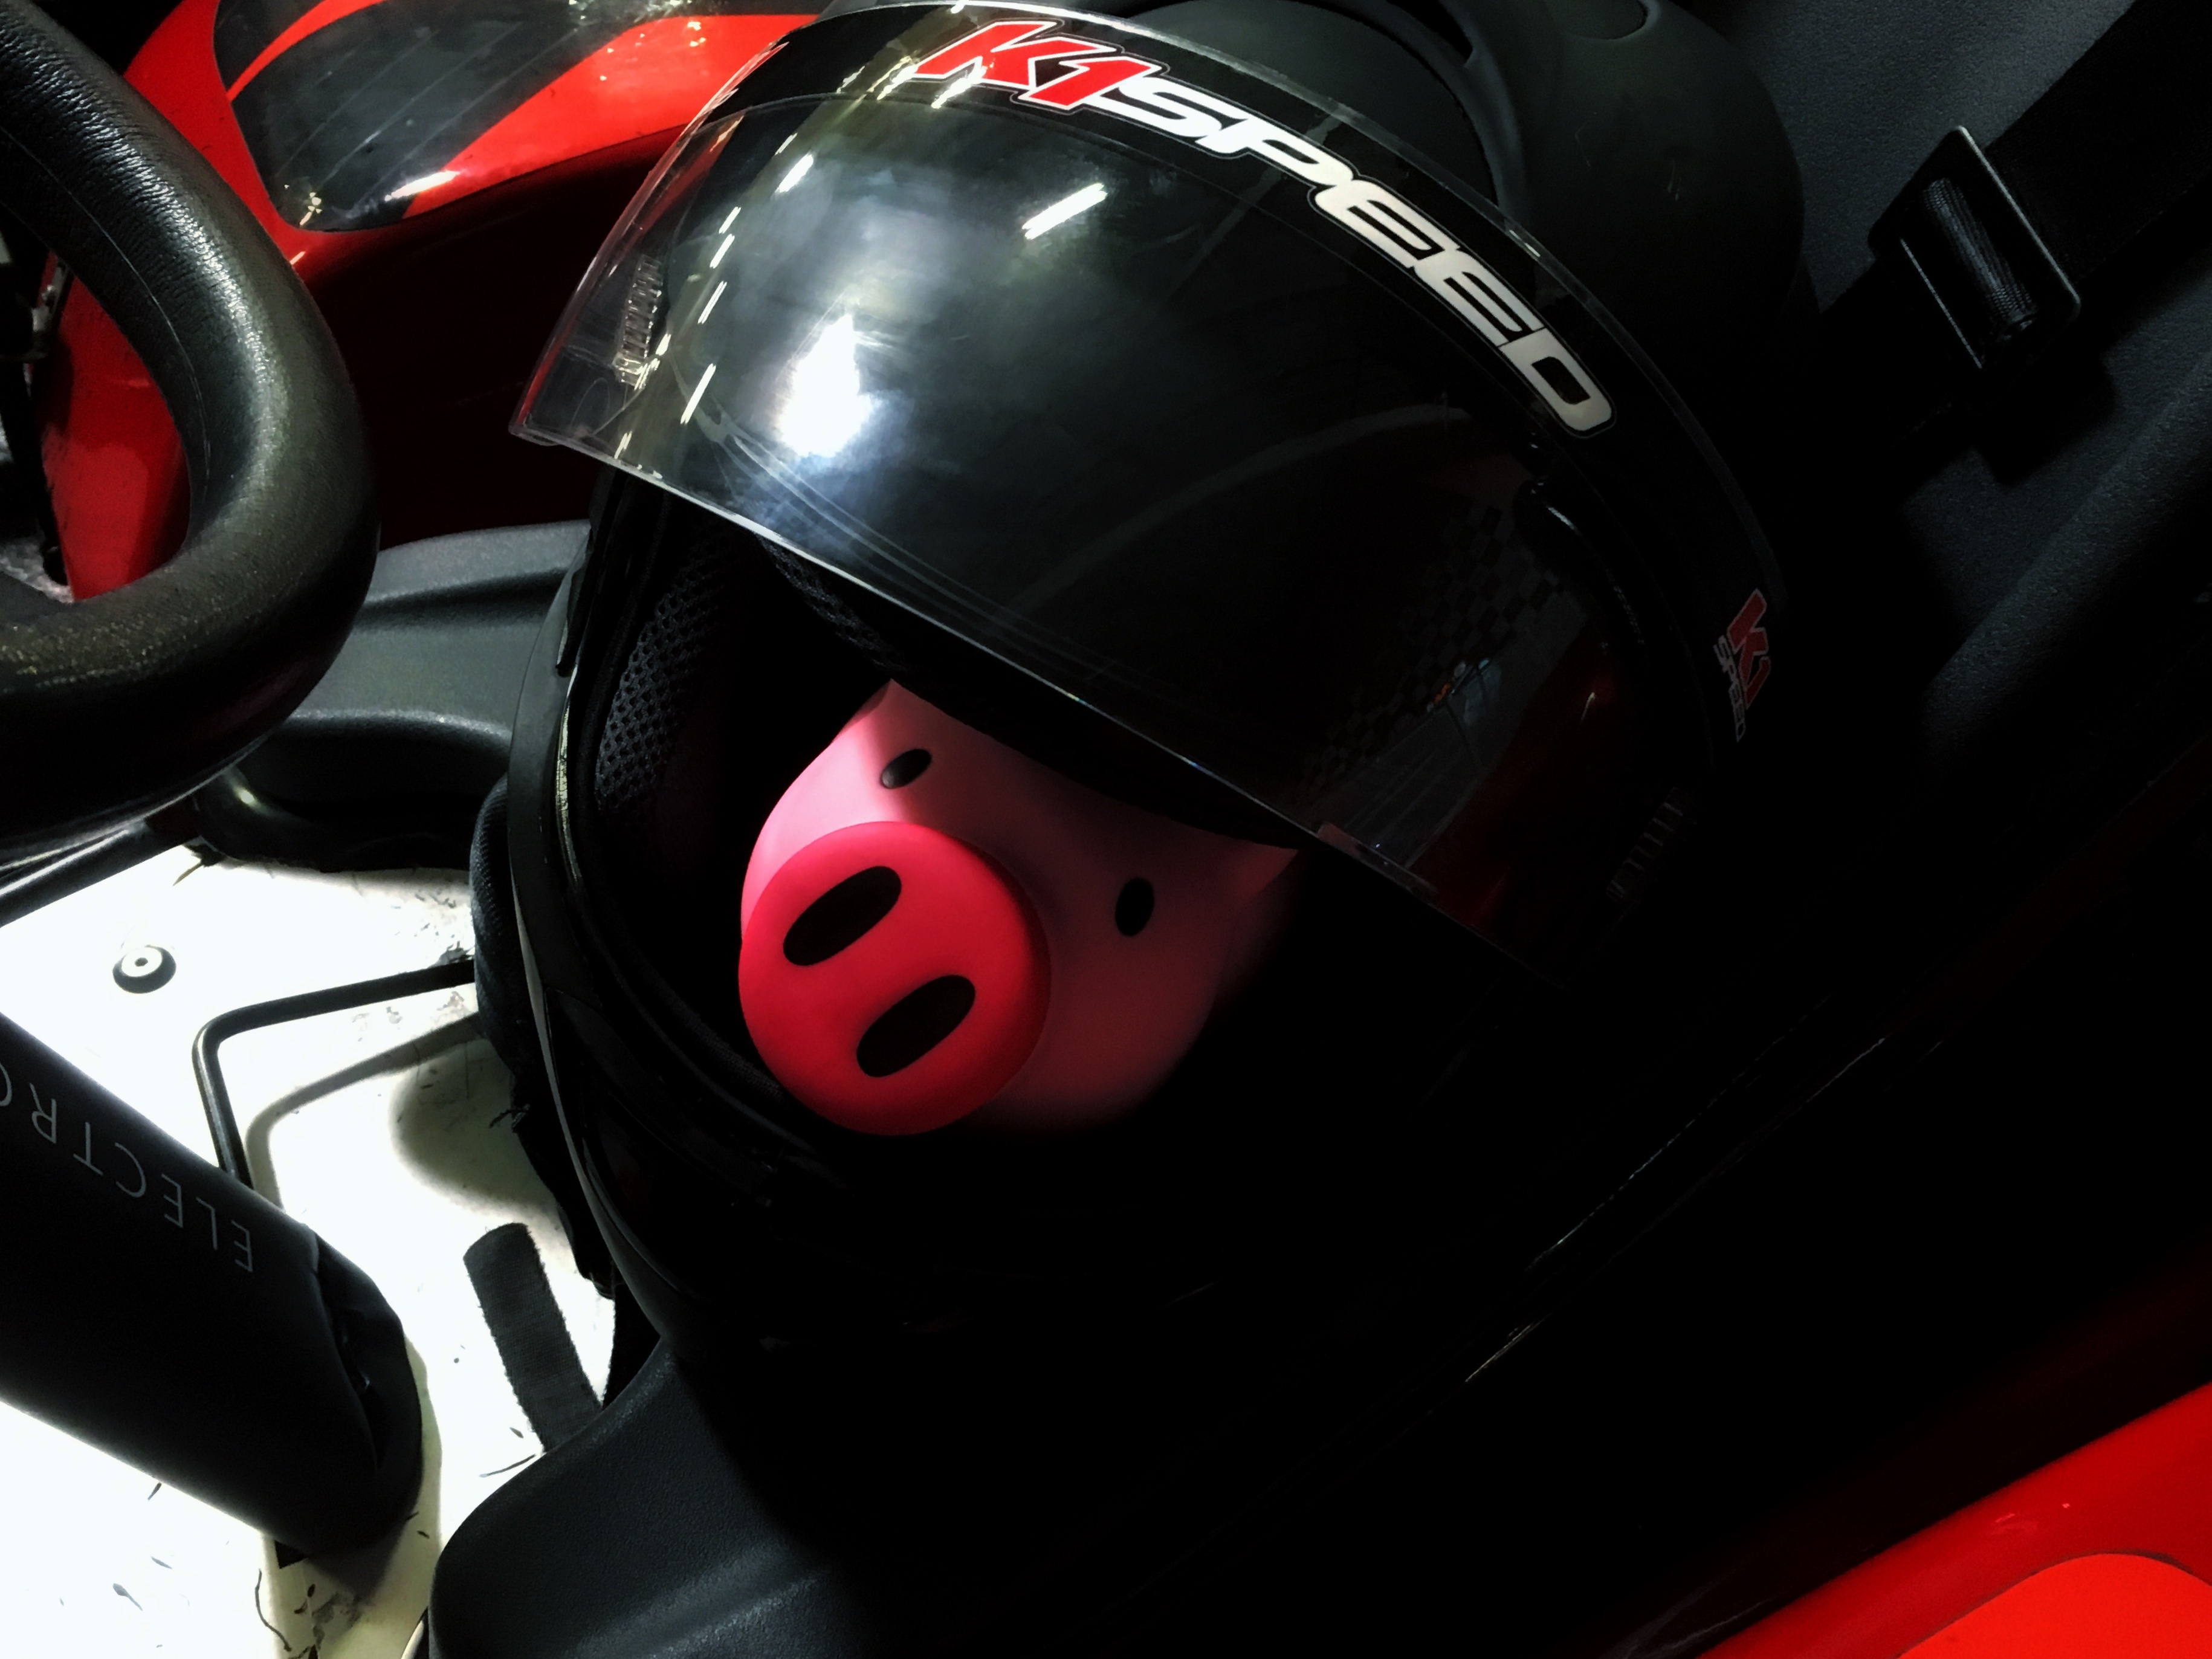 Pig Bank - In Helmet at K1 Speed